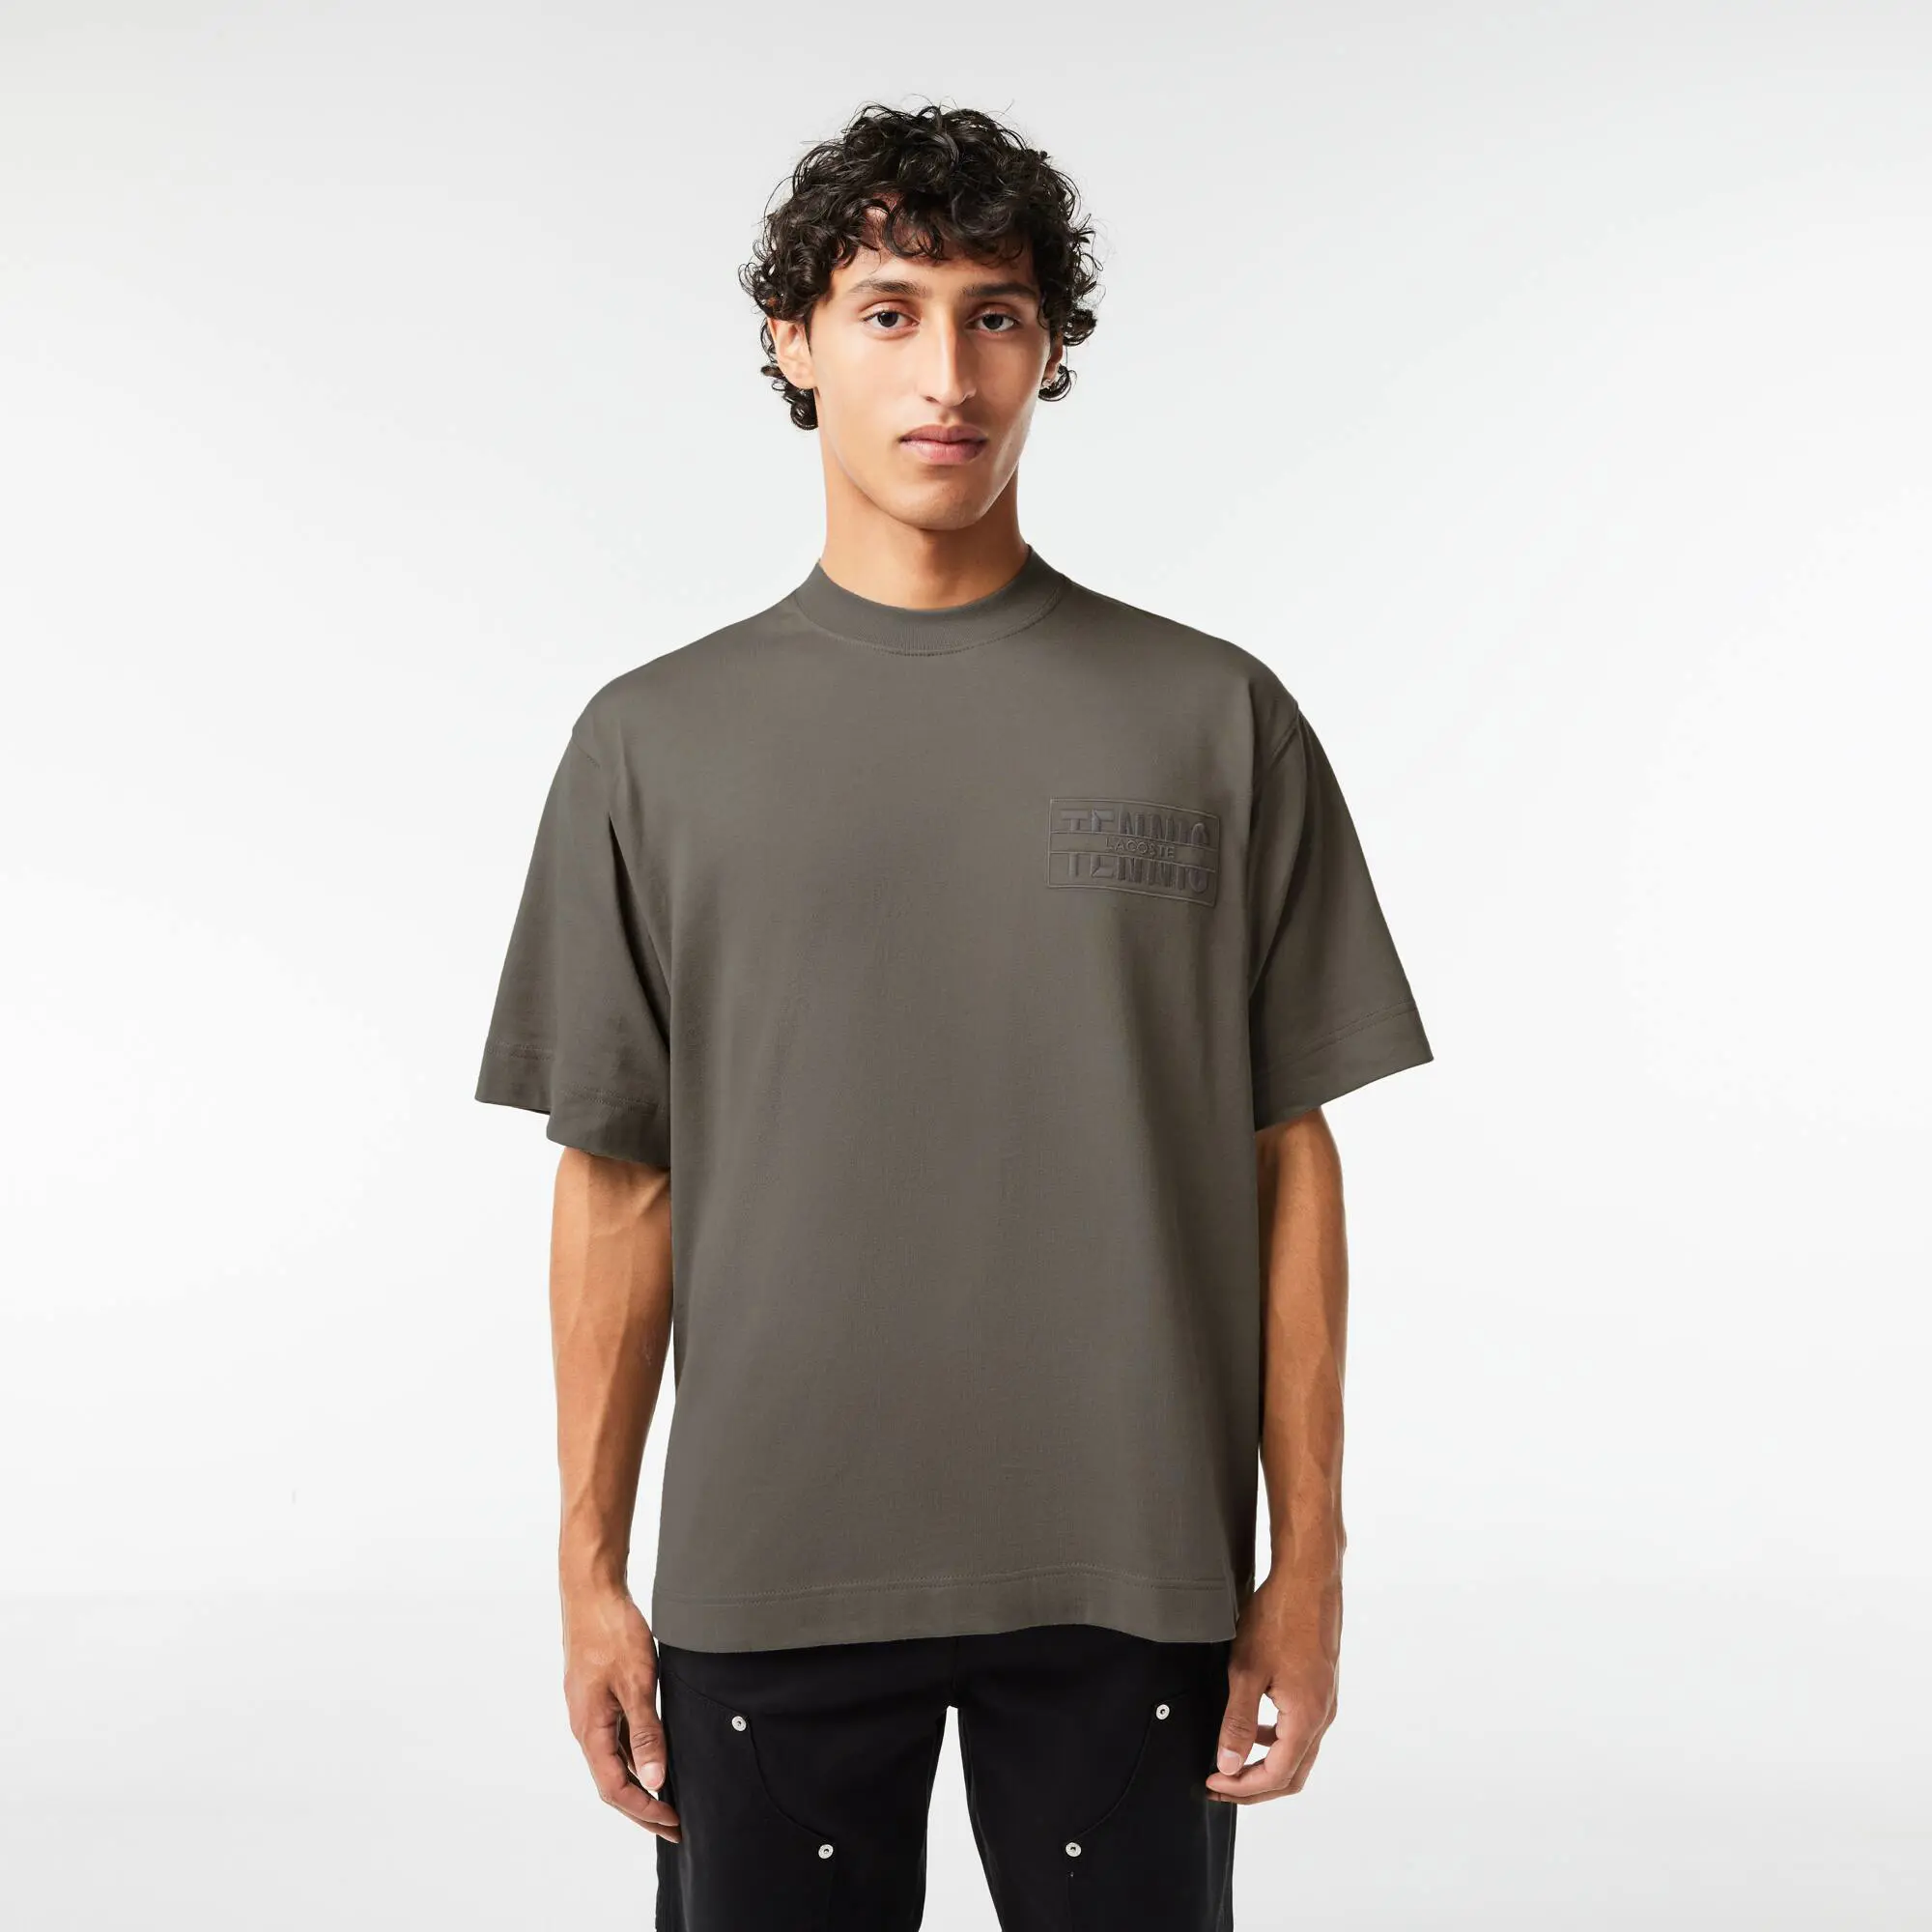 Lacoste T-shirt em algodão loose fit com bordado. 1